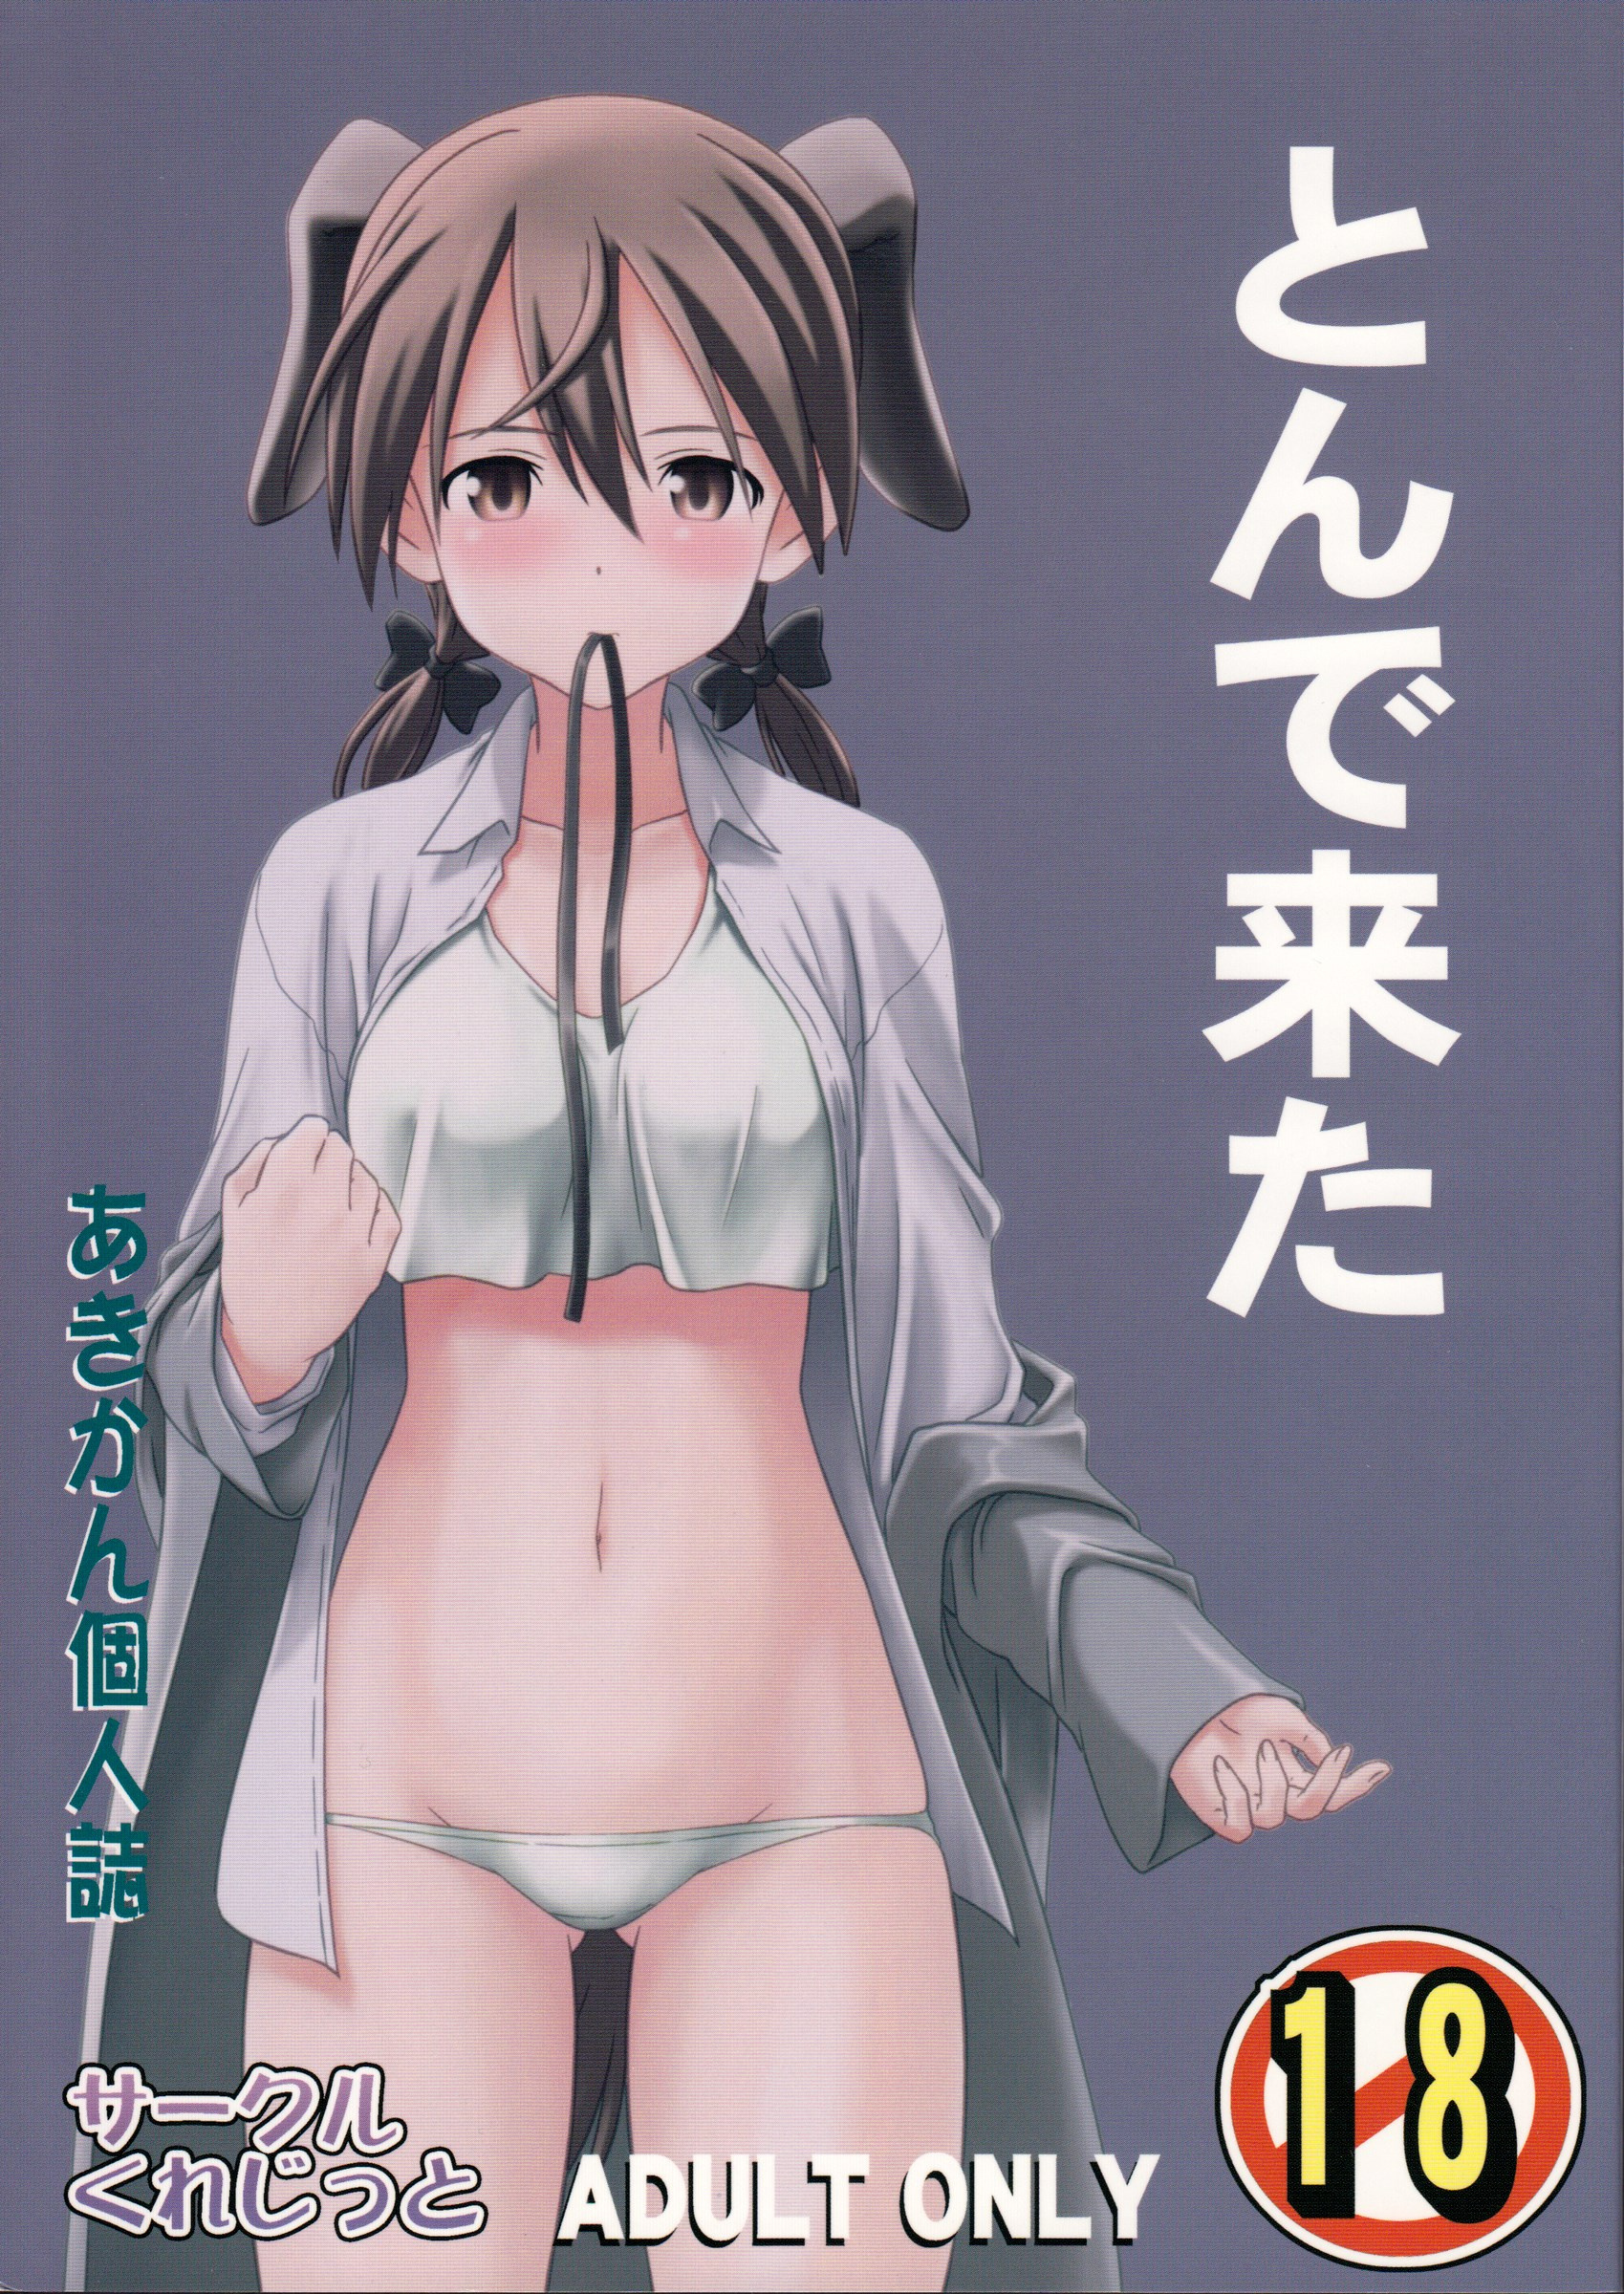 Anime Lesbian Hentai Manga - Yuri hentai manga - Tonde Kita - Multporn Comics & Hentai manga